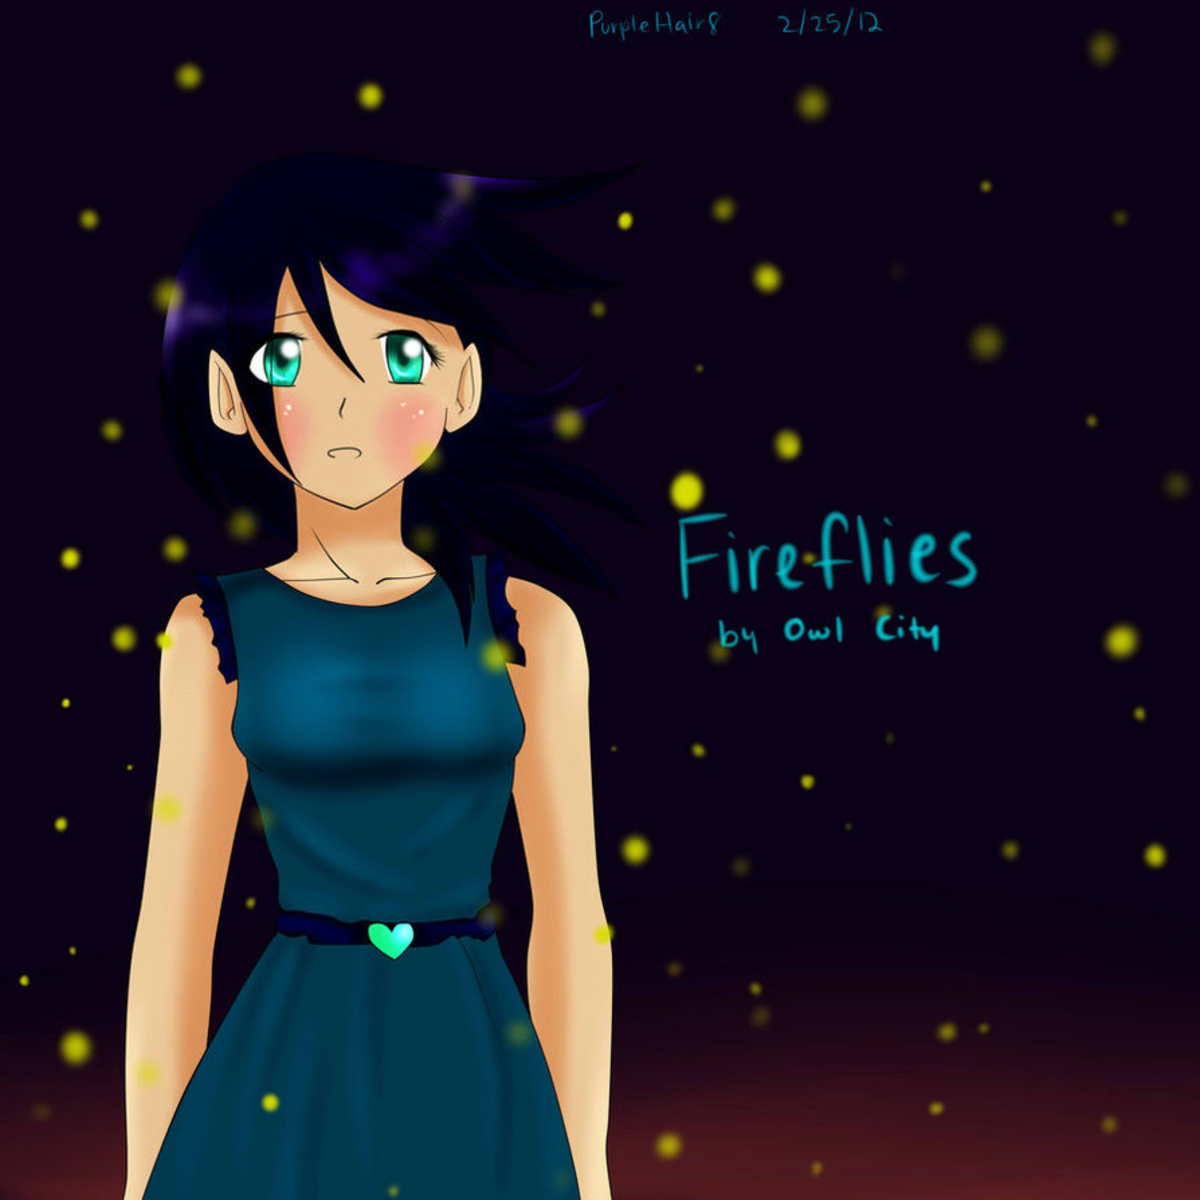 Pixel Desktop Wallpaper Fireflies By Owl City Purplehair Dqyf